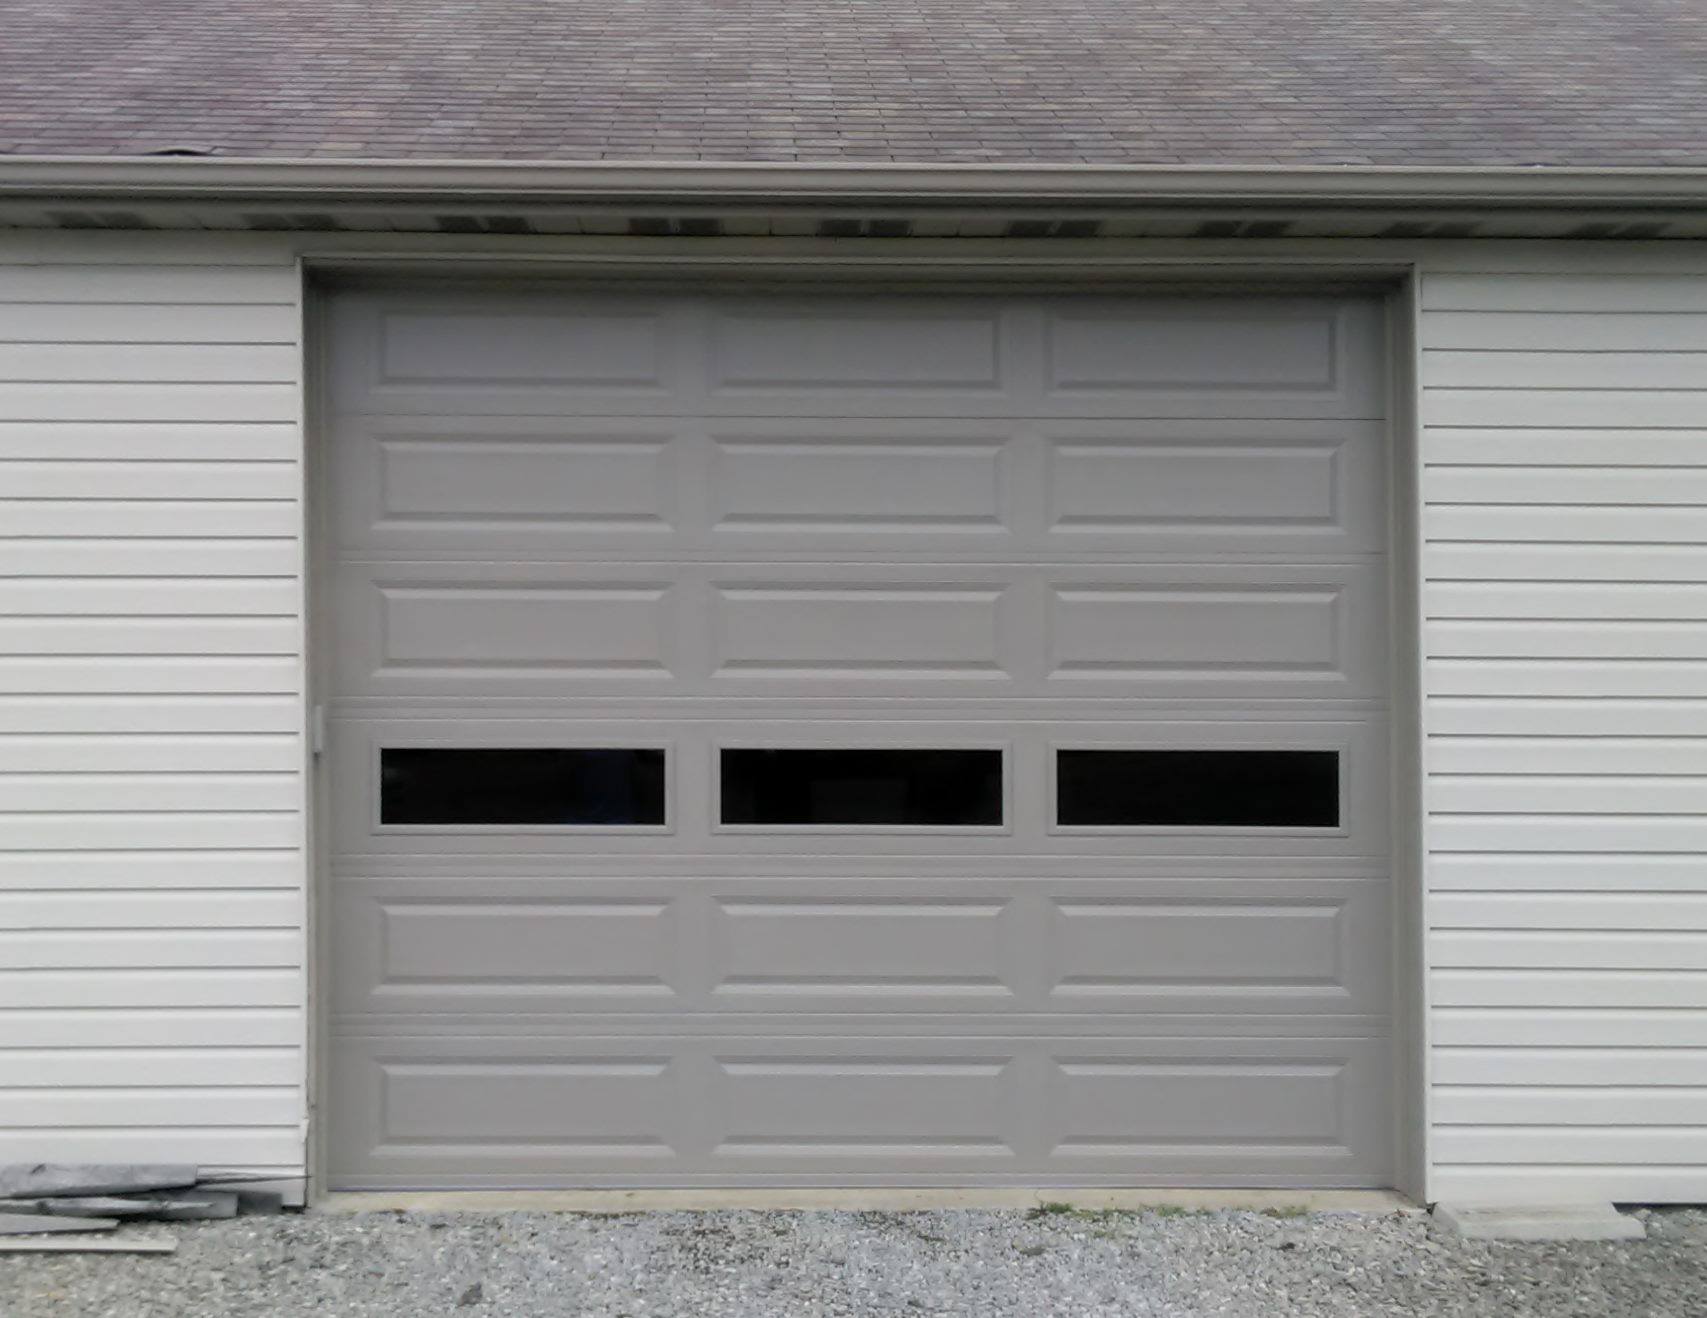 Behams Garage Doors - After Garage Door